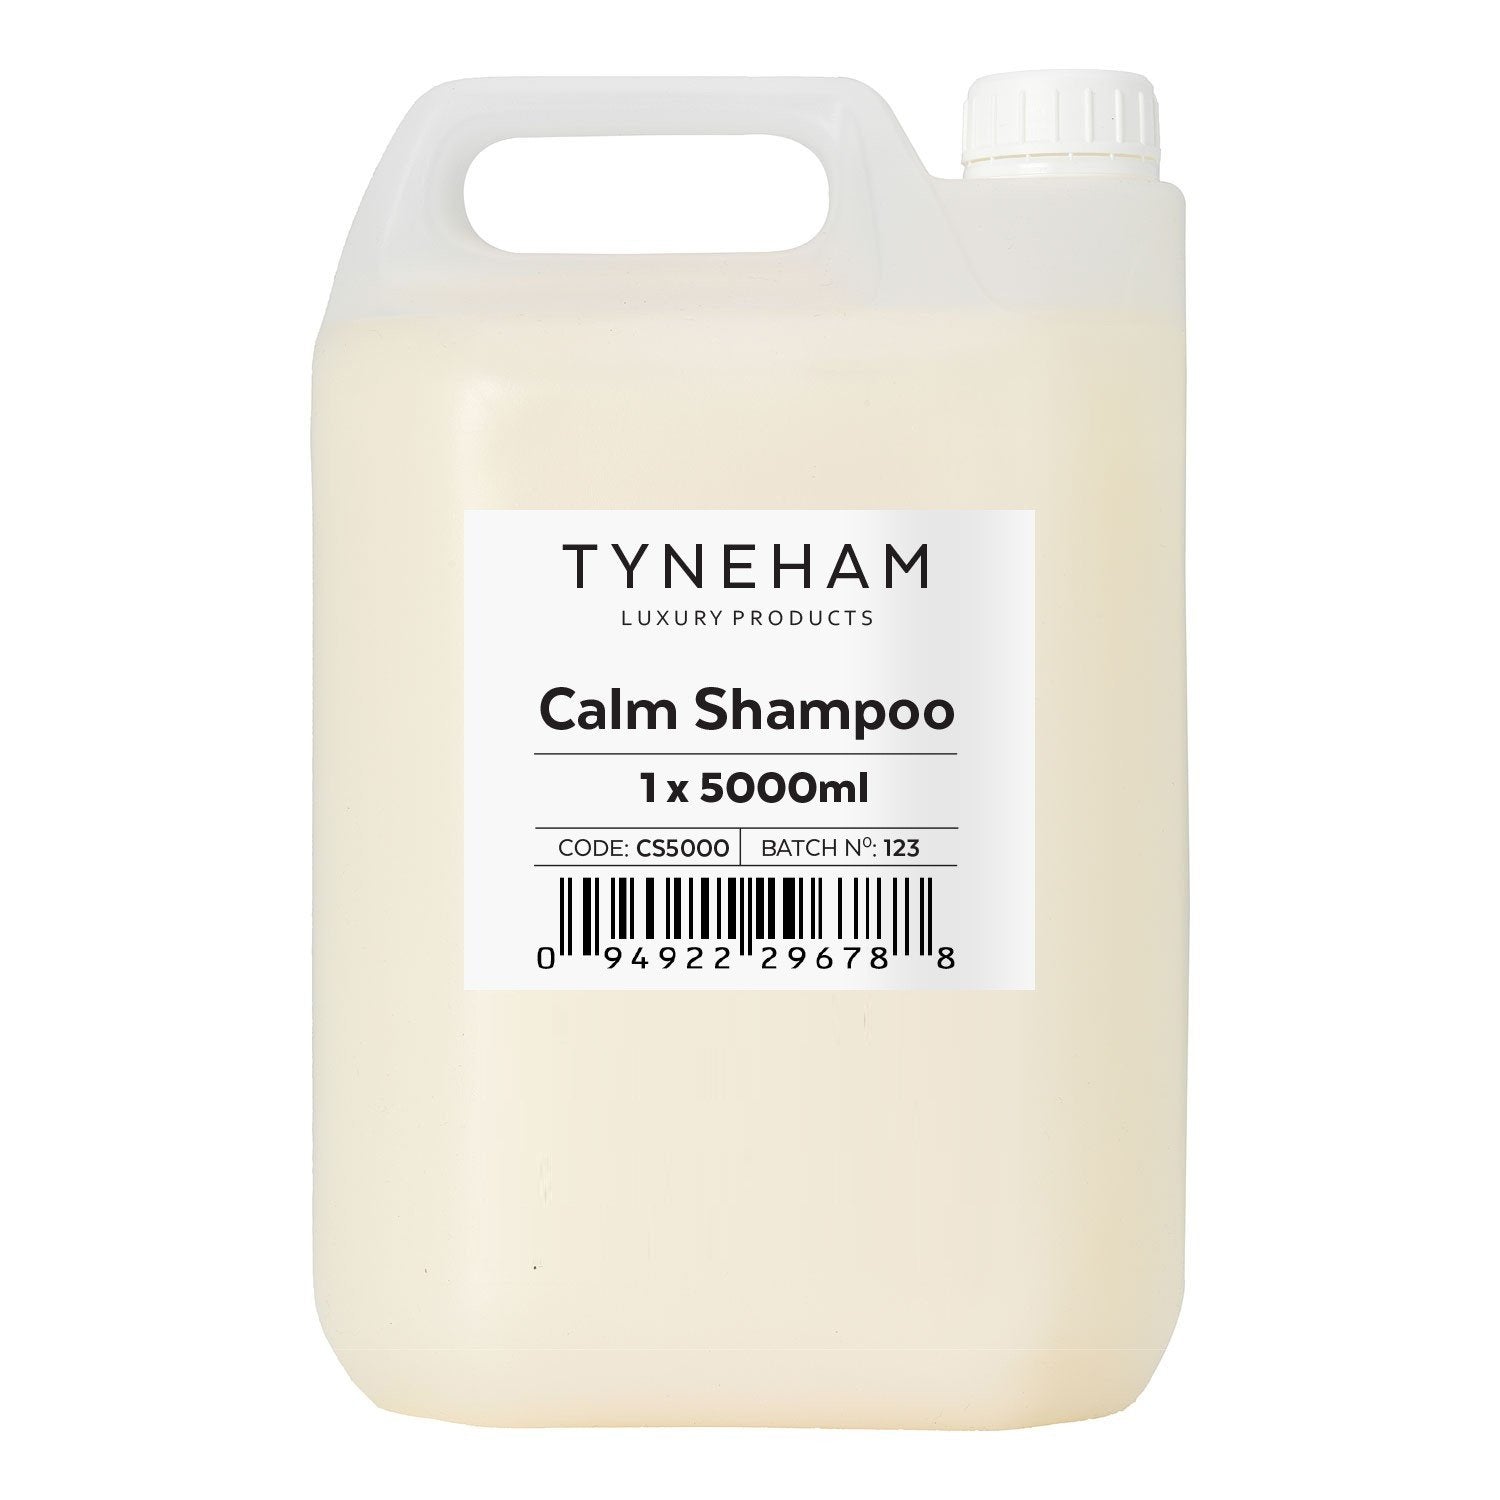 Calm Shampoo 5000ml Refill